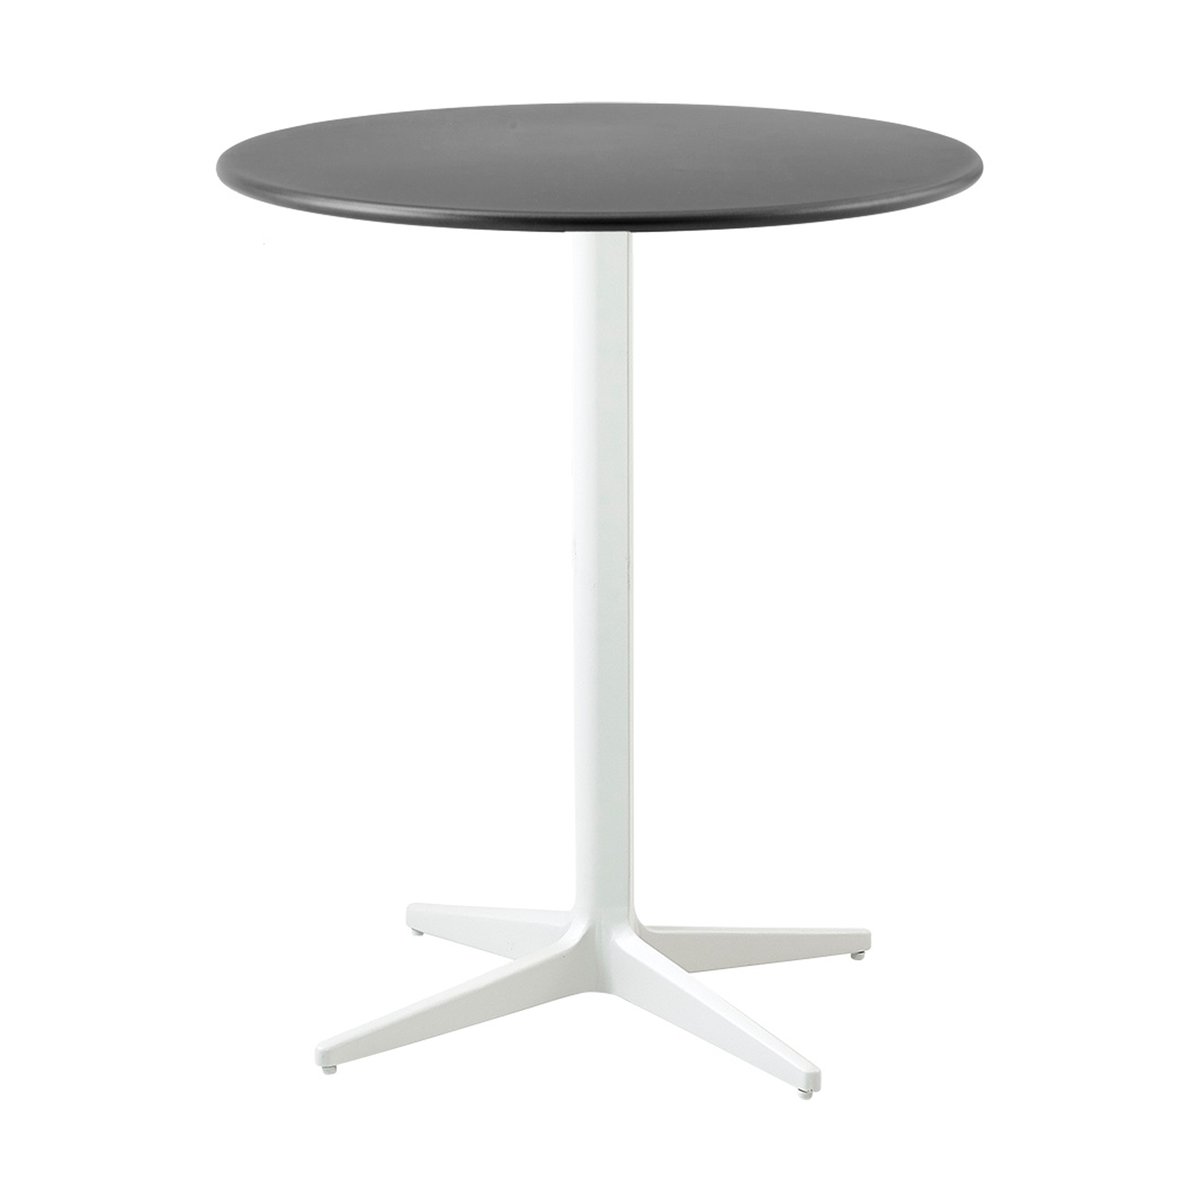 Cane-line Drop tafel Ø60 cm Lava grey-white